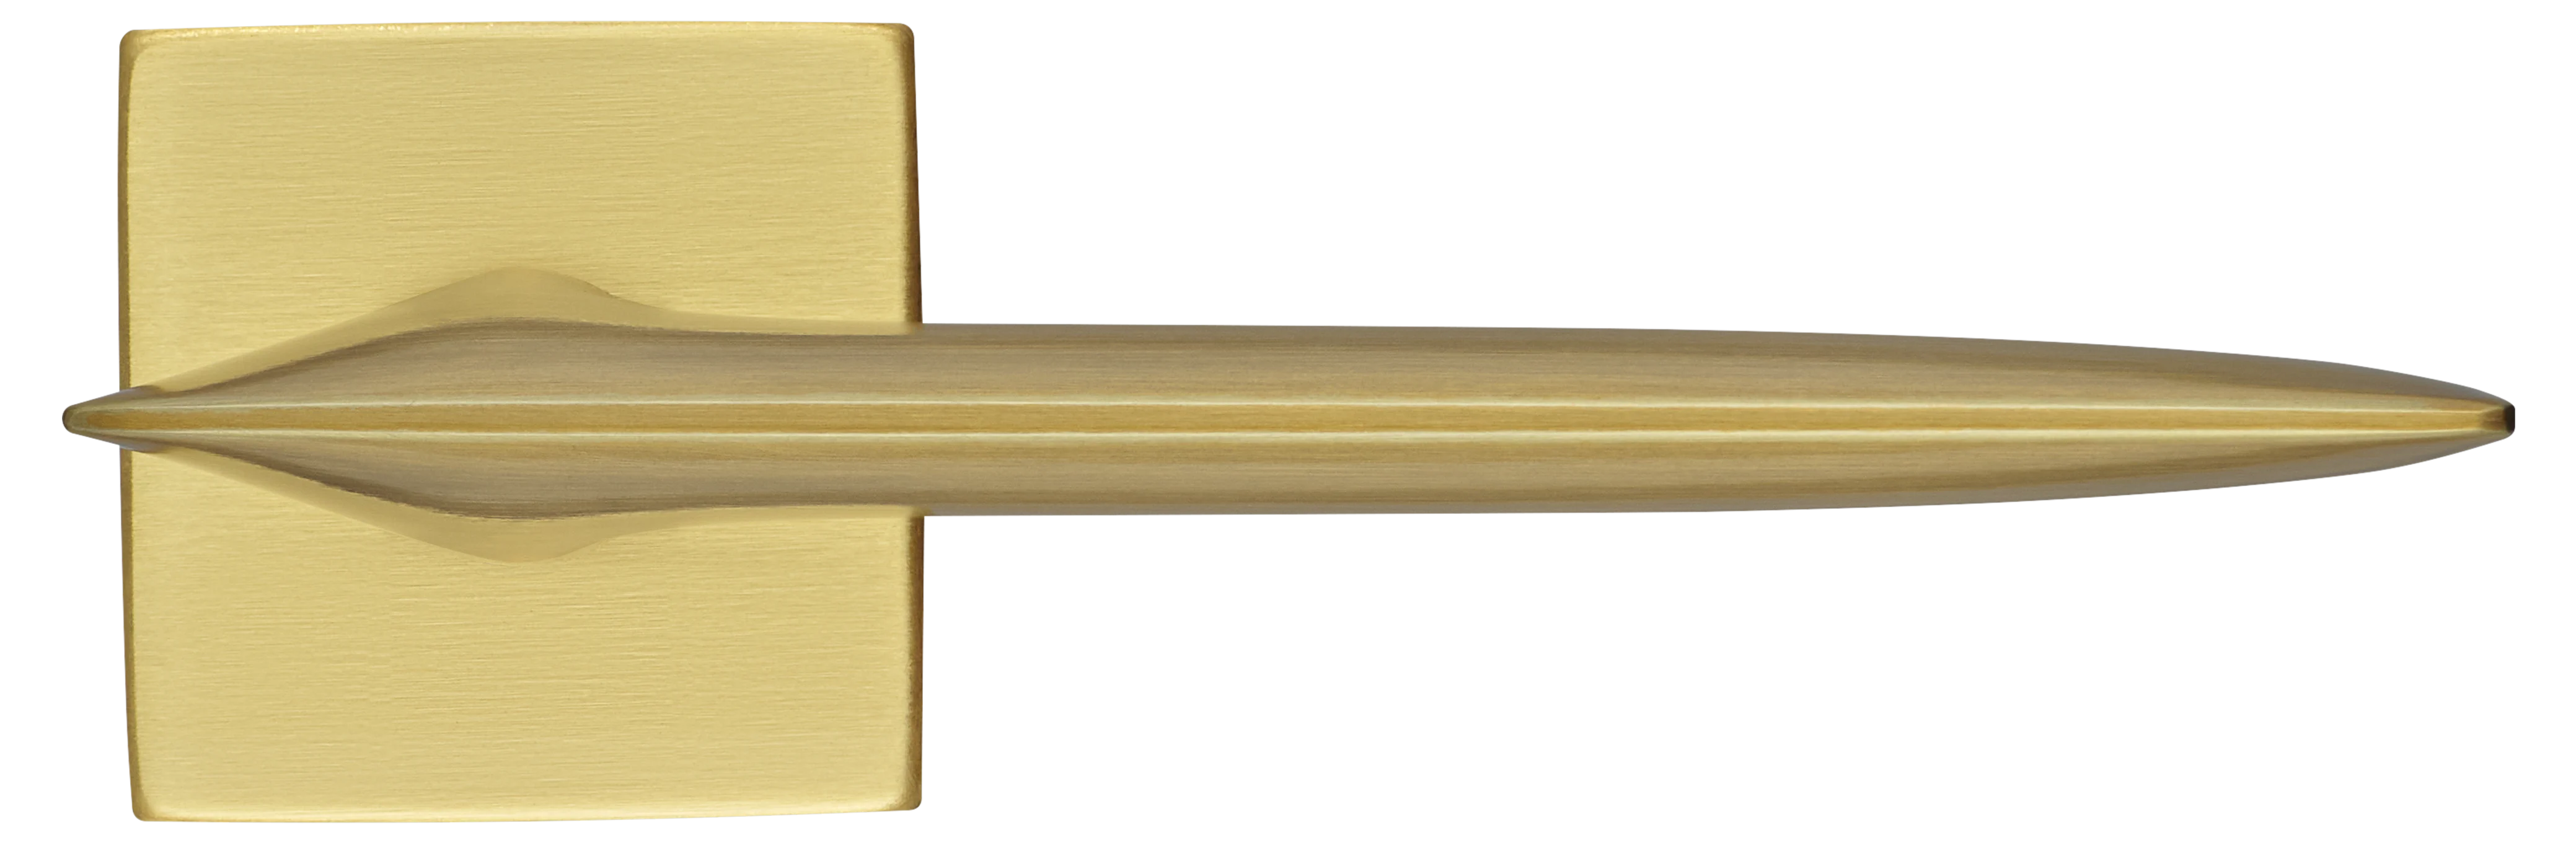 GALACTIC S5 OSA, ручка дверная, цвет -  матовое золото фото купить в Екатеринбурге